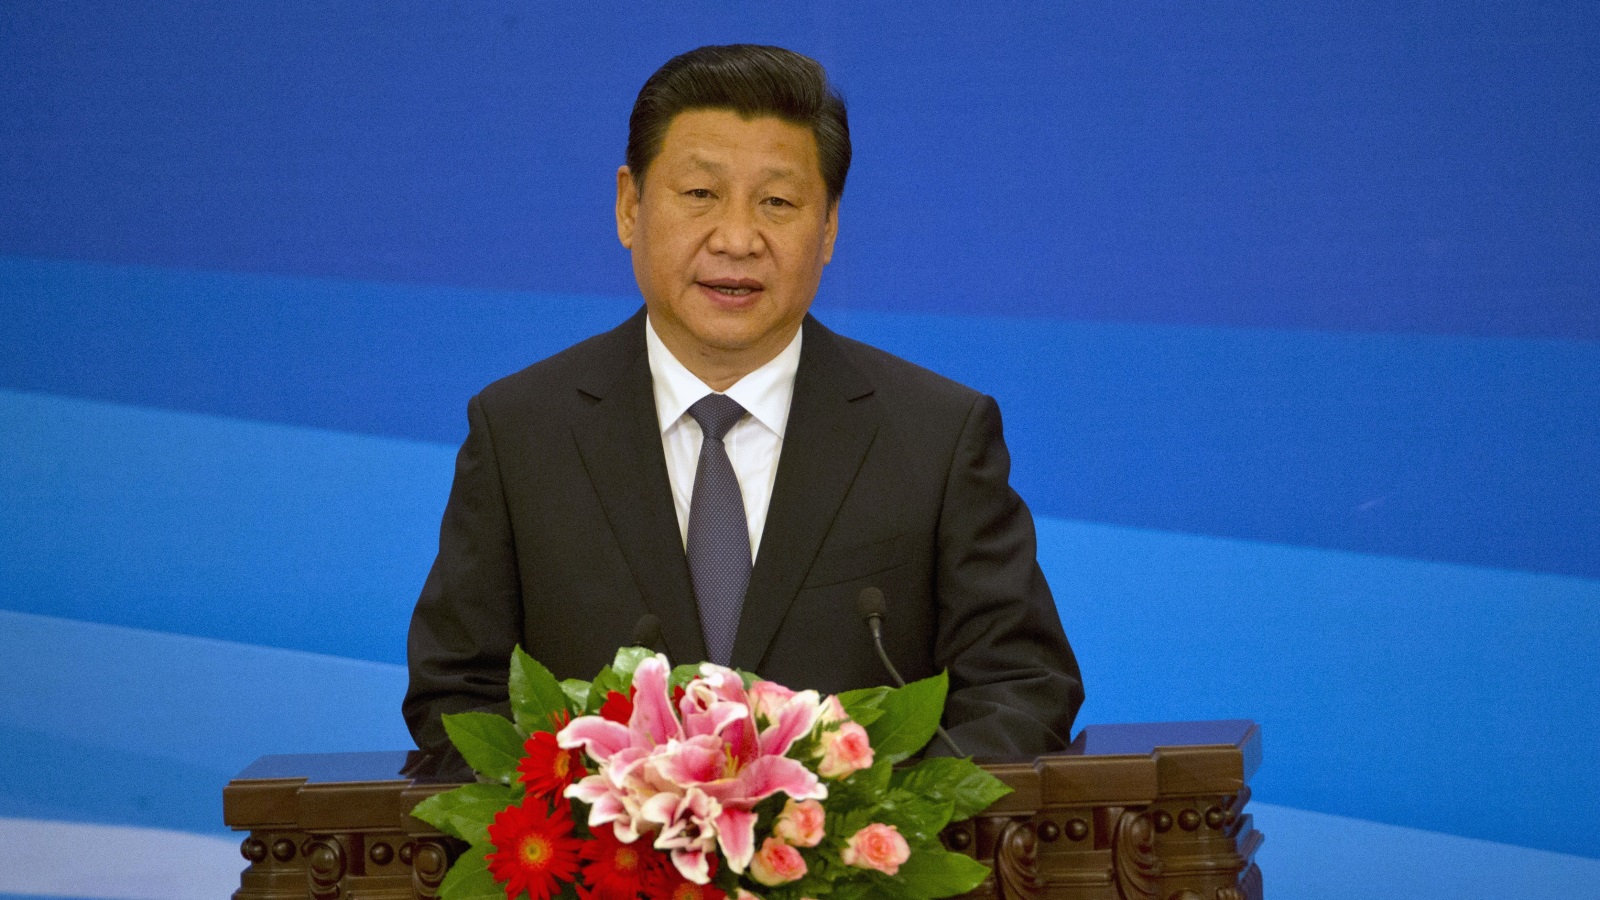 الرئيس الصيني شي جين بينغ يتحدث في الجلسة الافتتاحية للاجتماع الوزاري السادس لمنتدى التعاون الصيني العربي. بكين